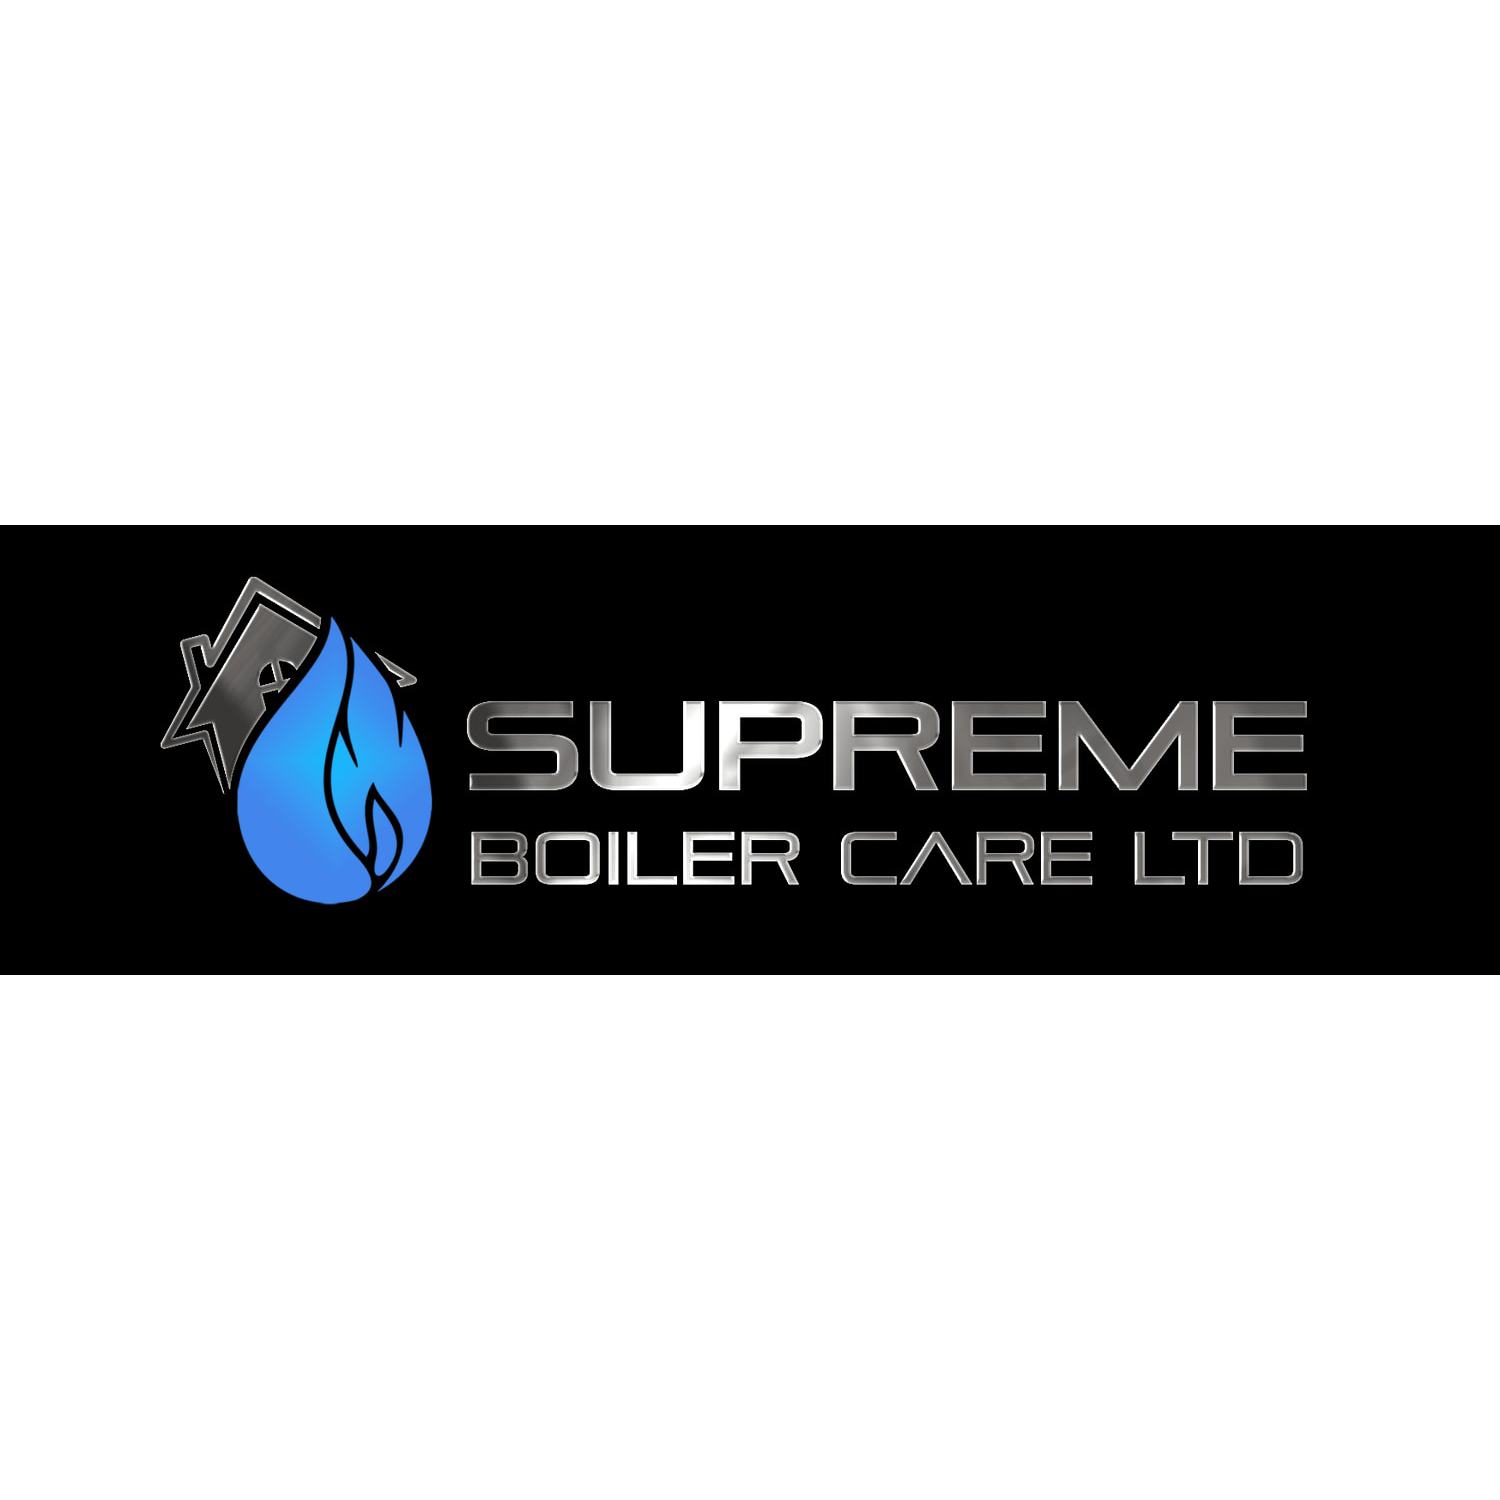 Supreme Boiler Care Ltd logo